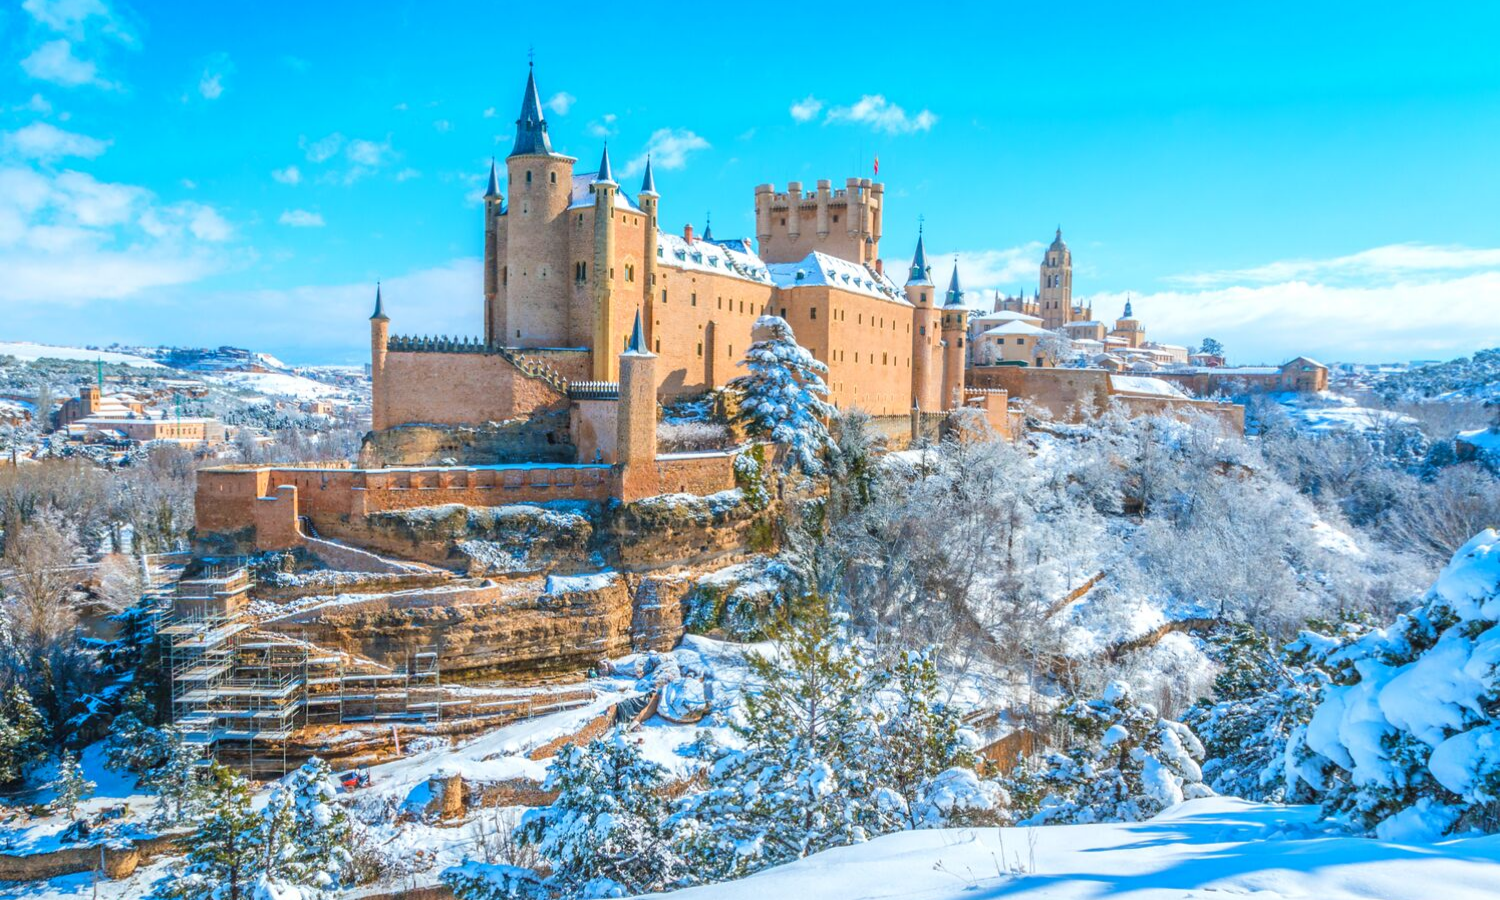 Alcazár de Segovia